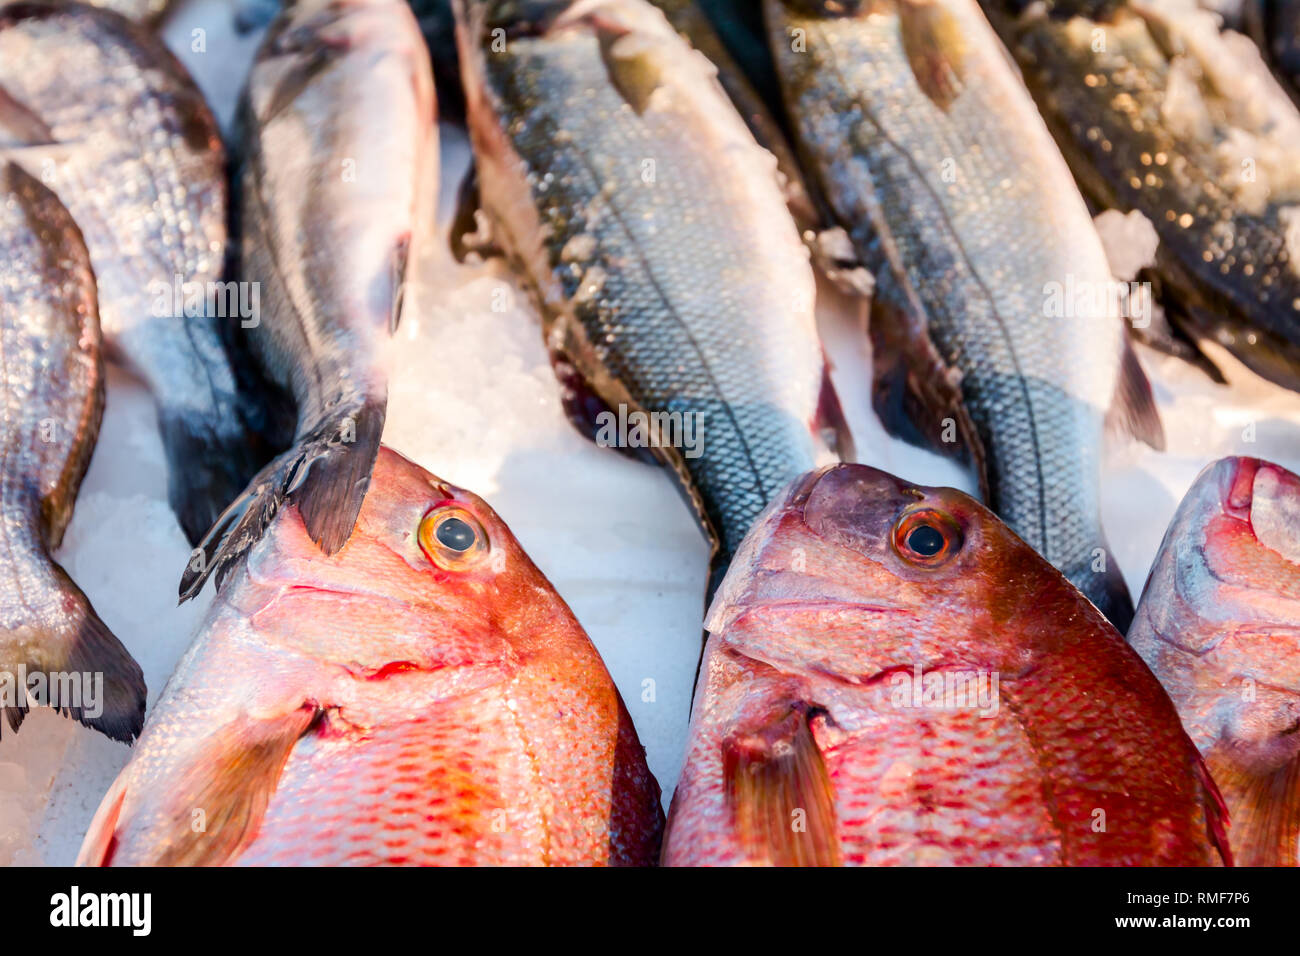 Stapel der frische Norden Red Snapper fischen, Lutjanus campechanusfish, die für den Verkauf auf dem Fischhändler, Meeresfrüchte im freien Markt. Stockfoto